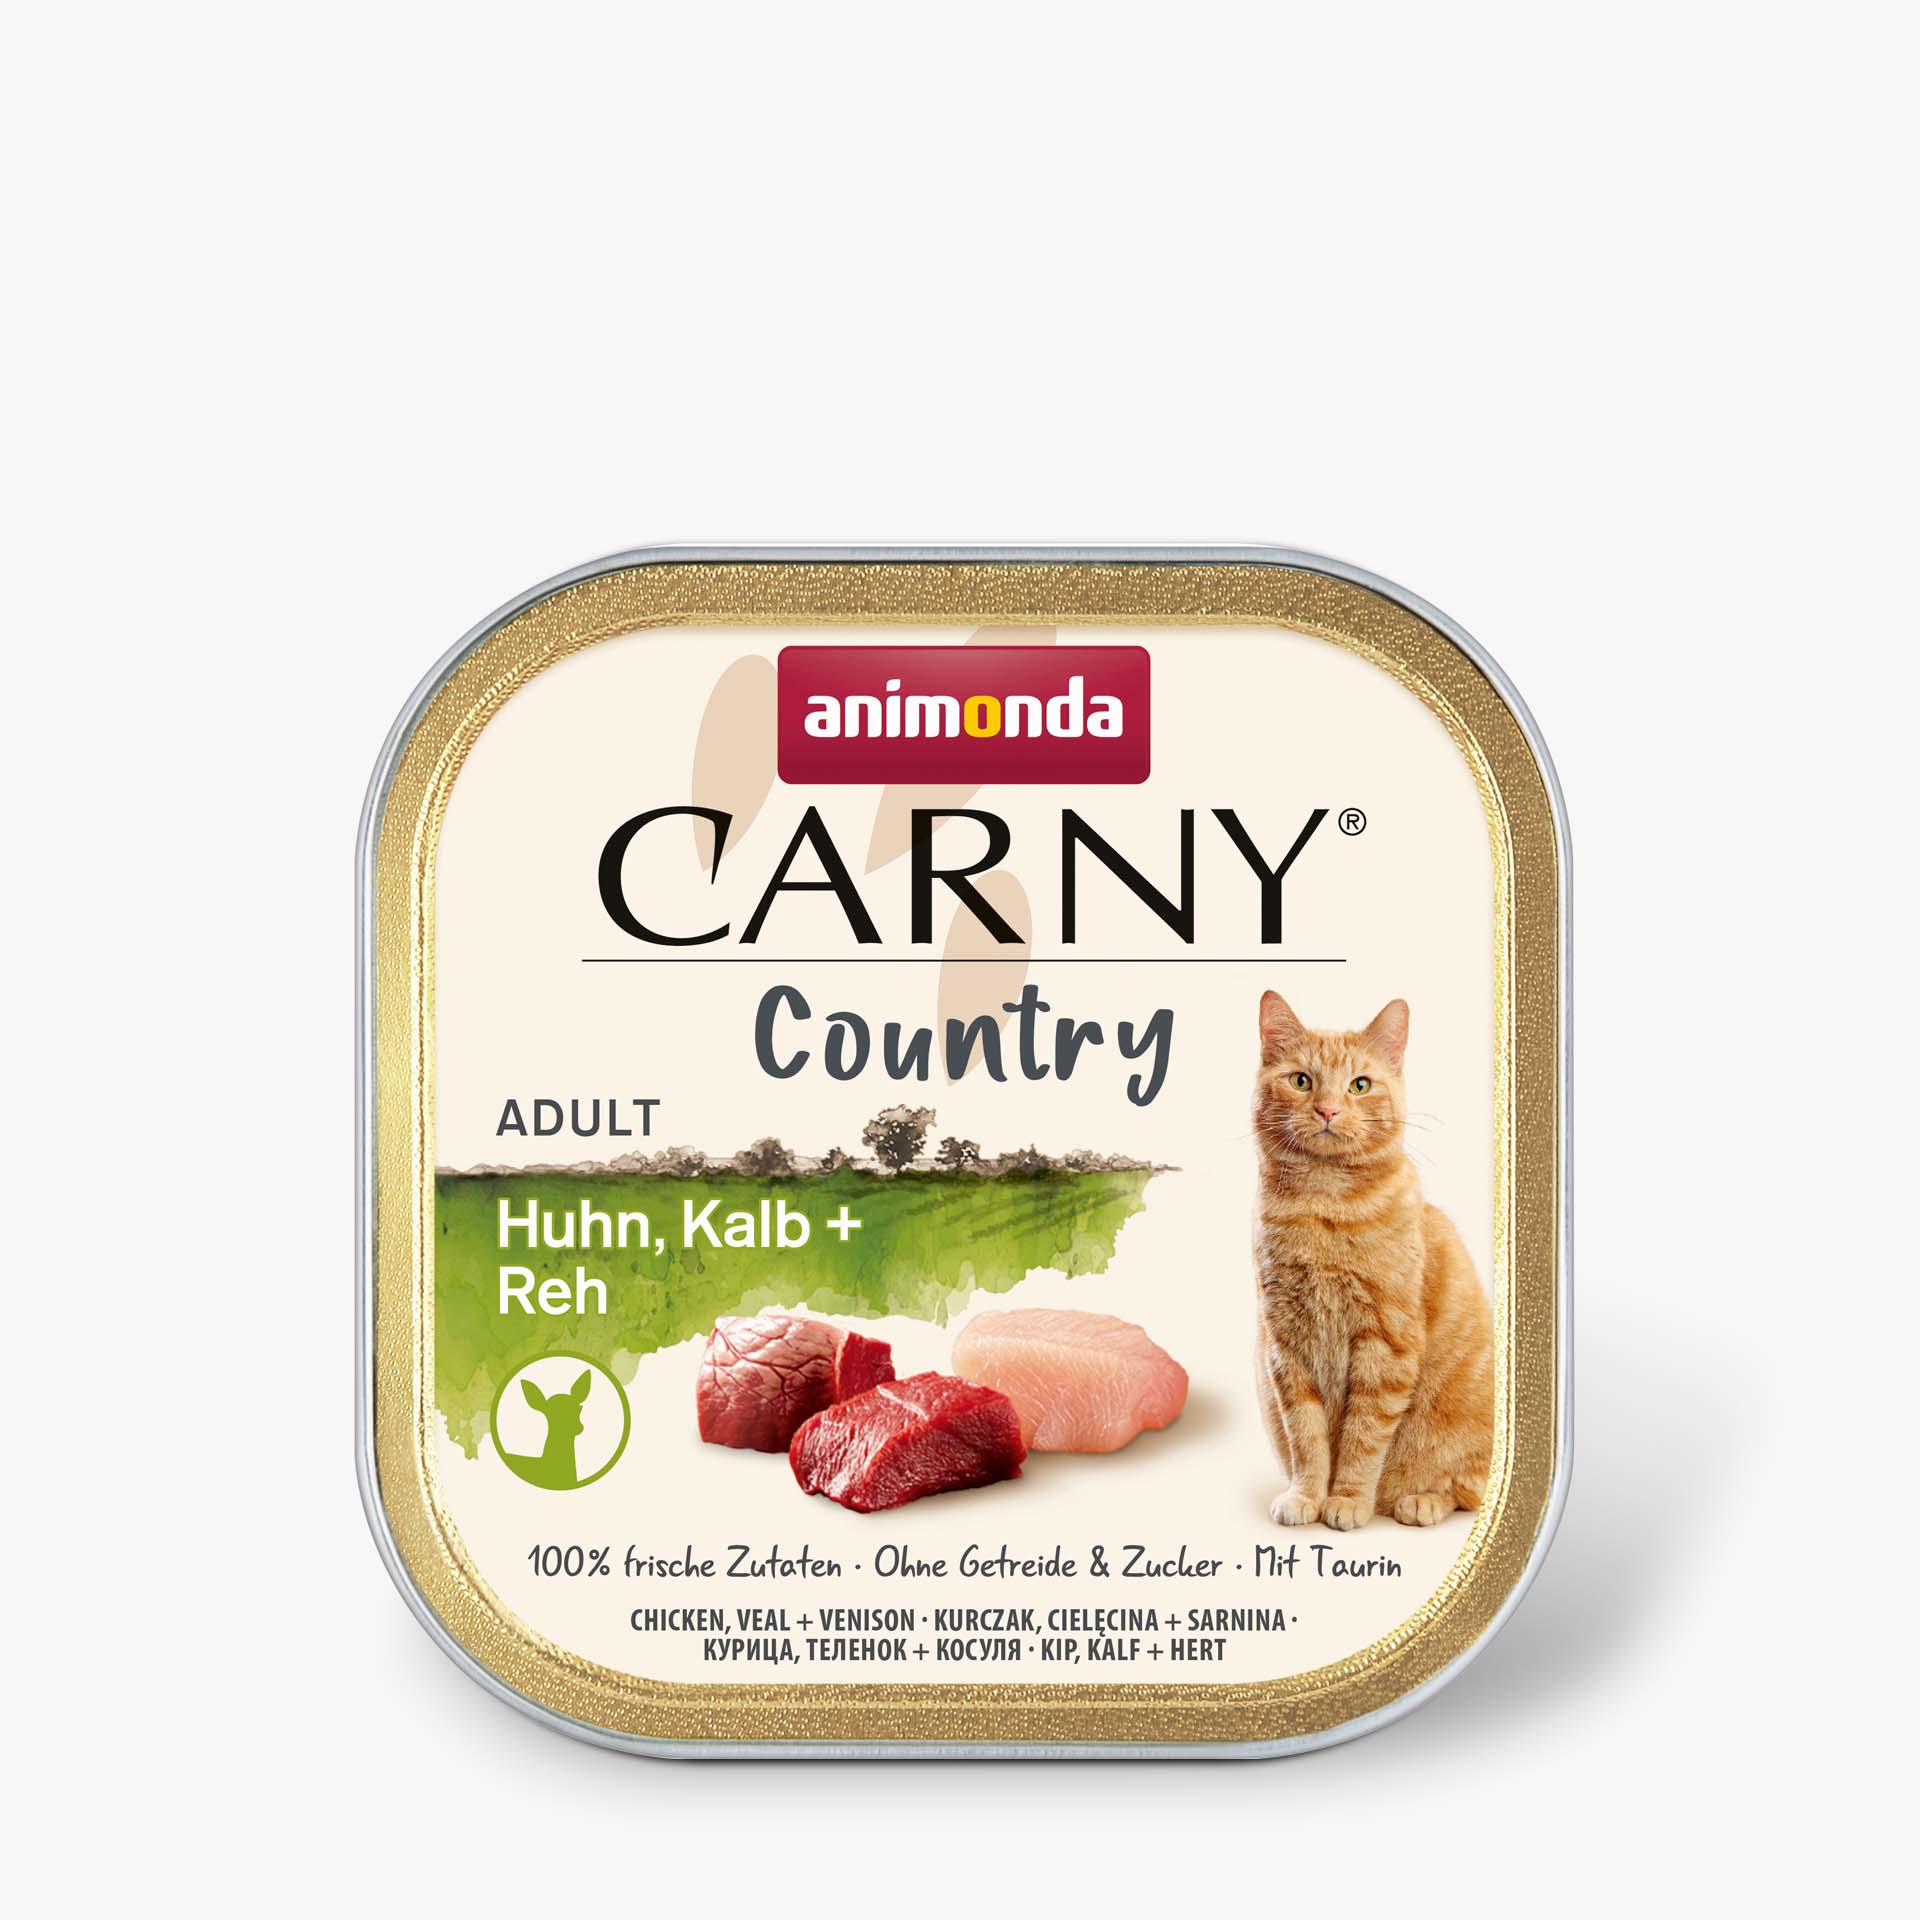 Carny Country Adult Huhn, Kalb + Reh